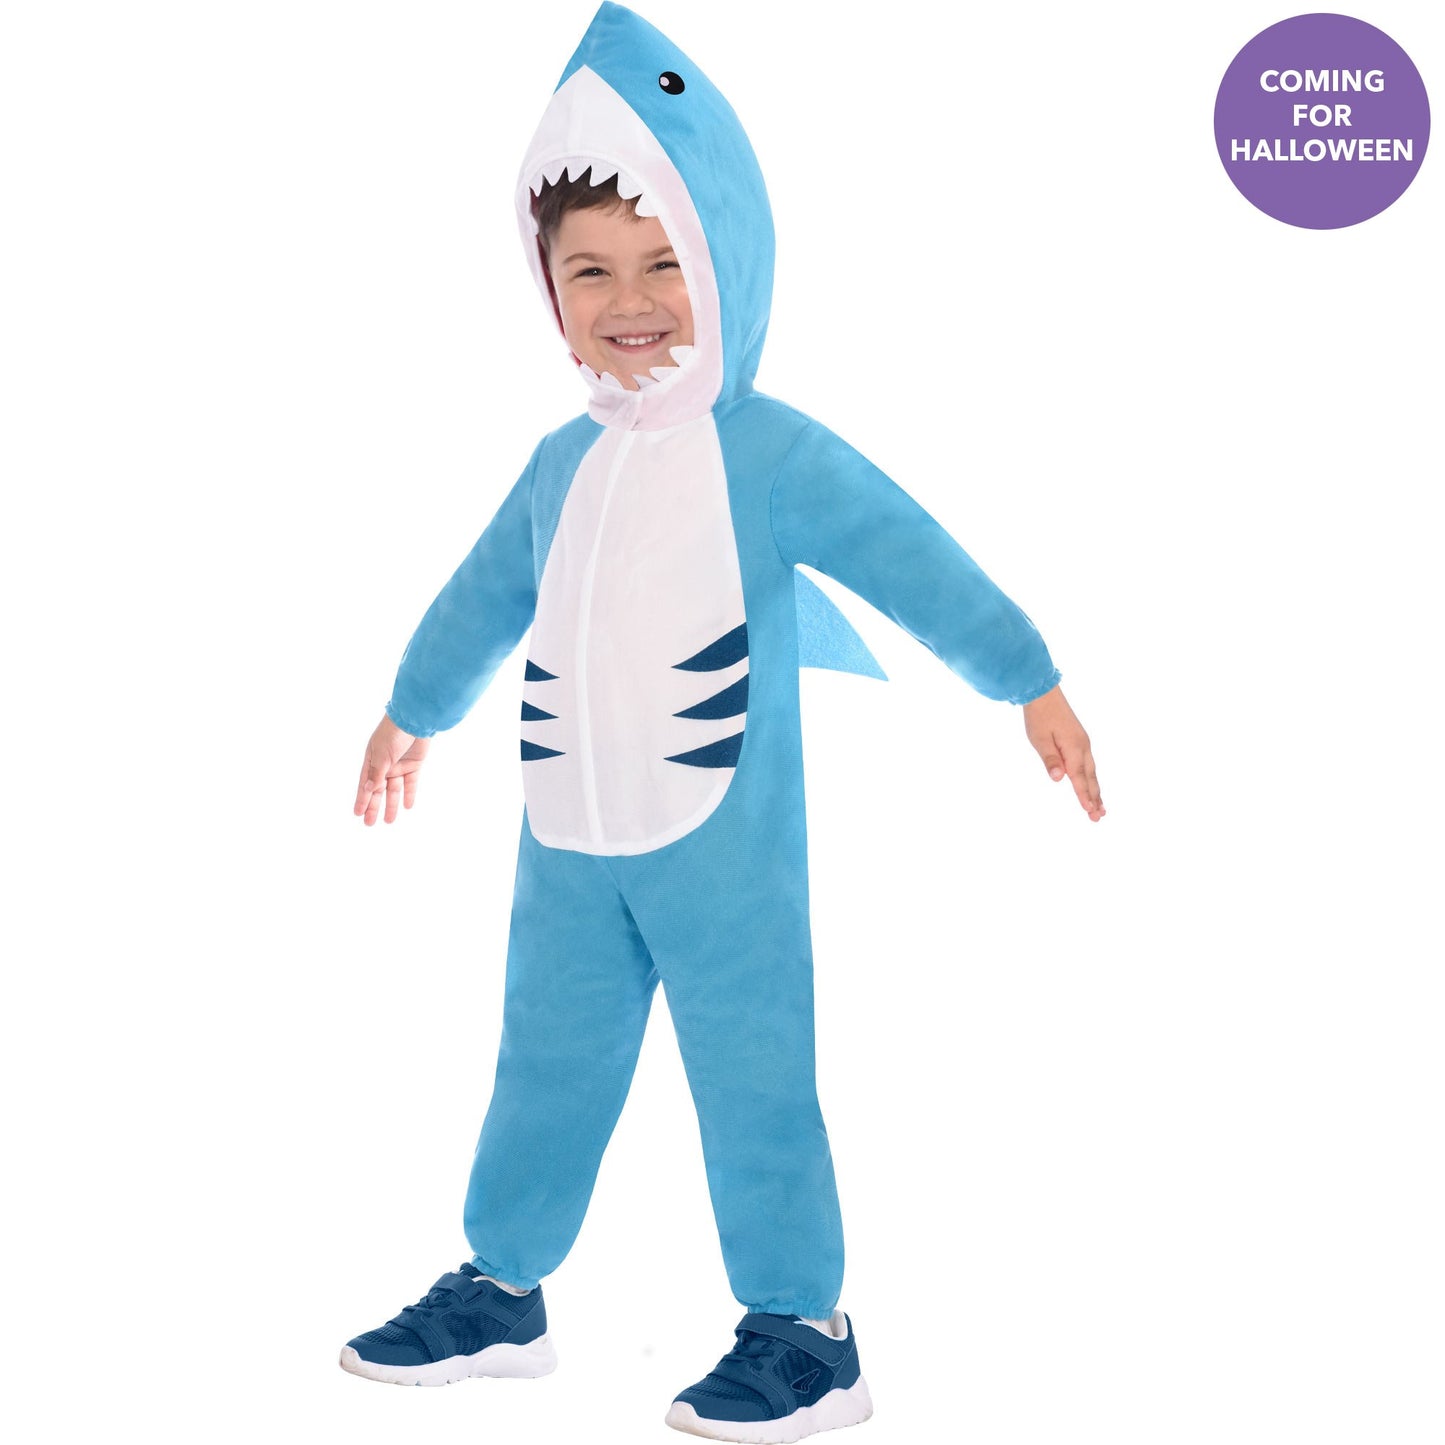 Costume Great White Shark 4-6 Years